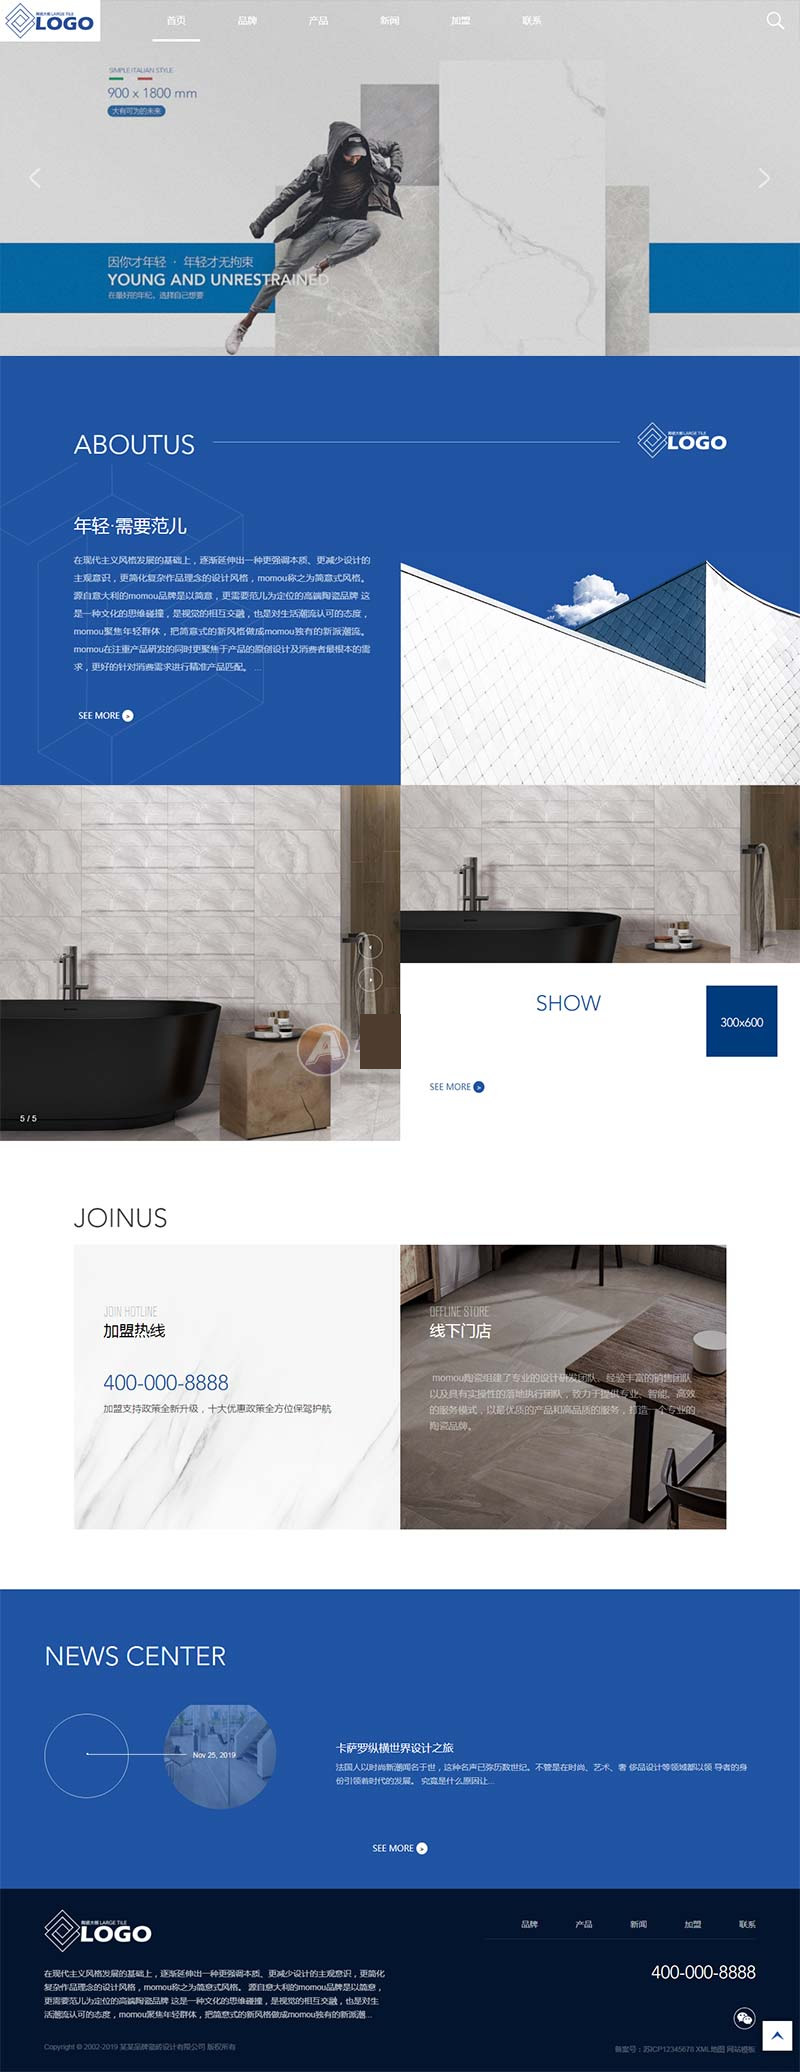 (自顺应手机版)相应式品牌建材瓷砖类网站源码 HTML5高端瓷砖卫浴网站织梦模板-零度空间